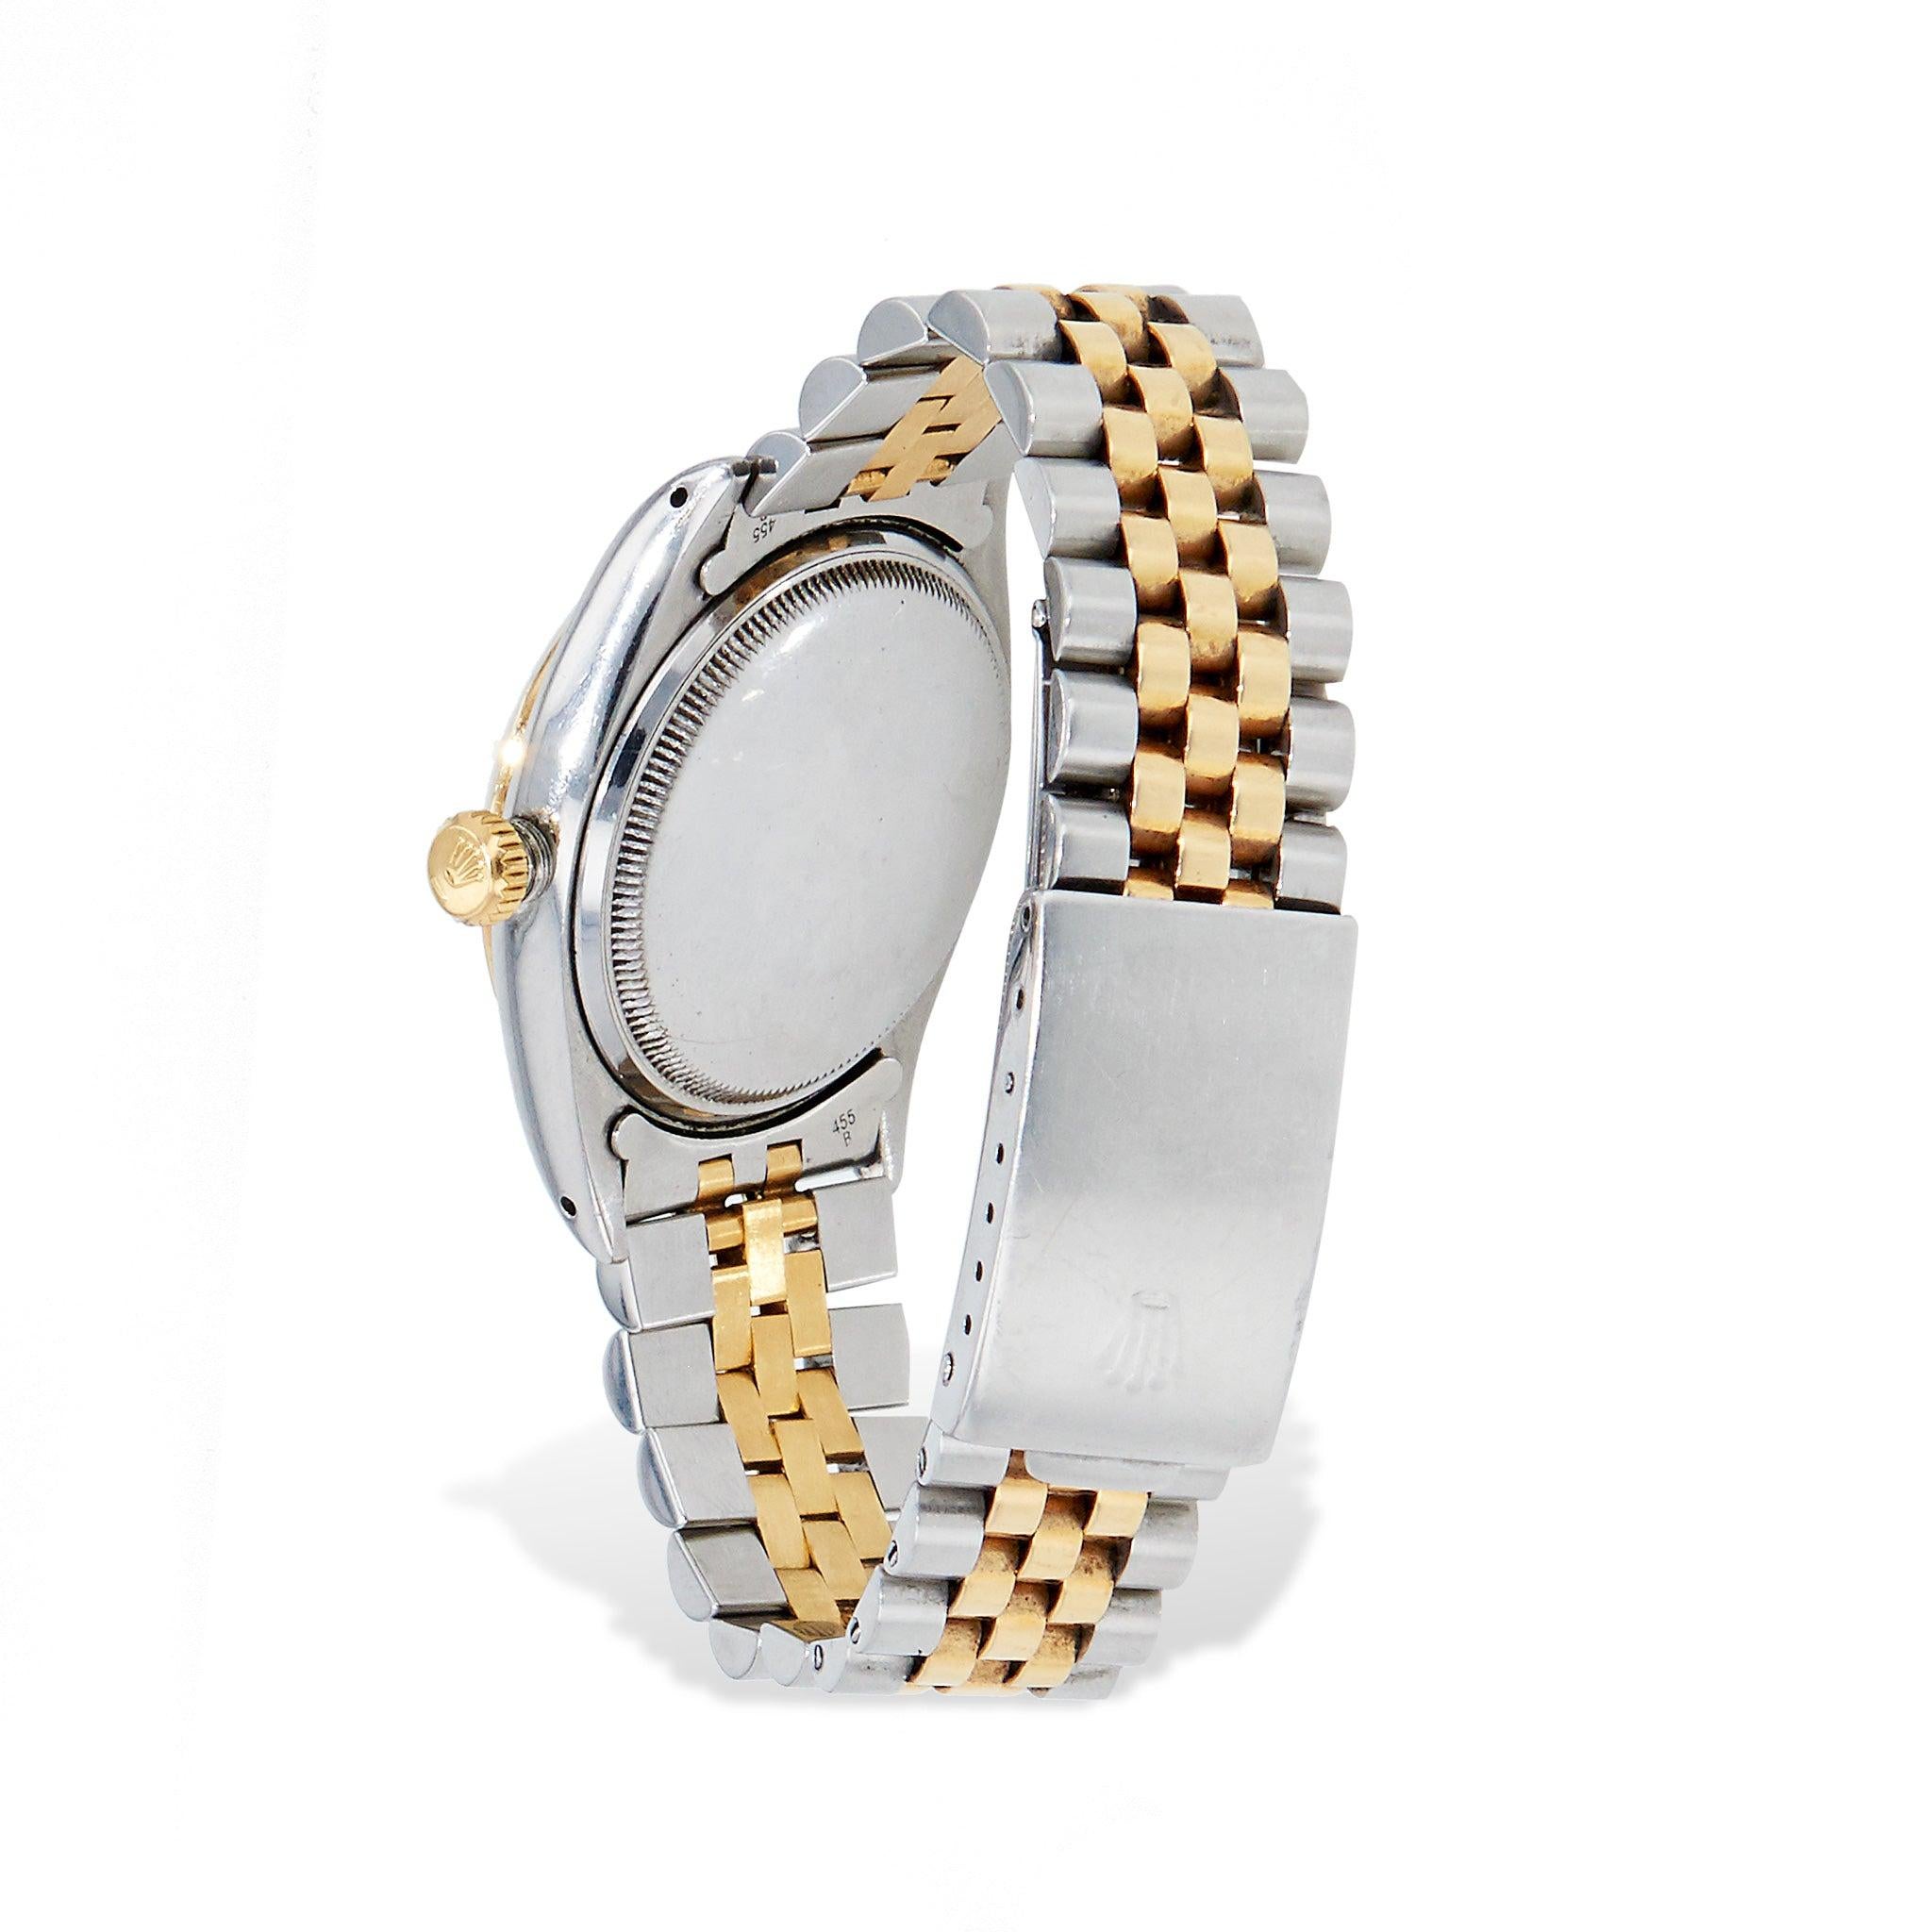 Erleben Sie zeitlose Eleganz mit dieser atemberaubenden Rolex Datejust 36mm Estate Watch. Mit weißem Zifferblatt, zweifarbigem Armband und circa 1950er Jahren. Modell Nr. 6305 und Seriennummer 940770, dieser authentische Zeitmesser strahlt